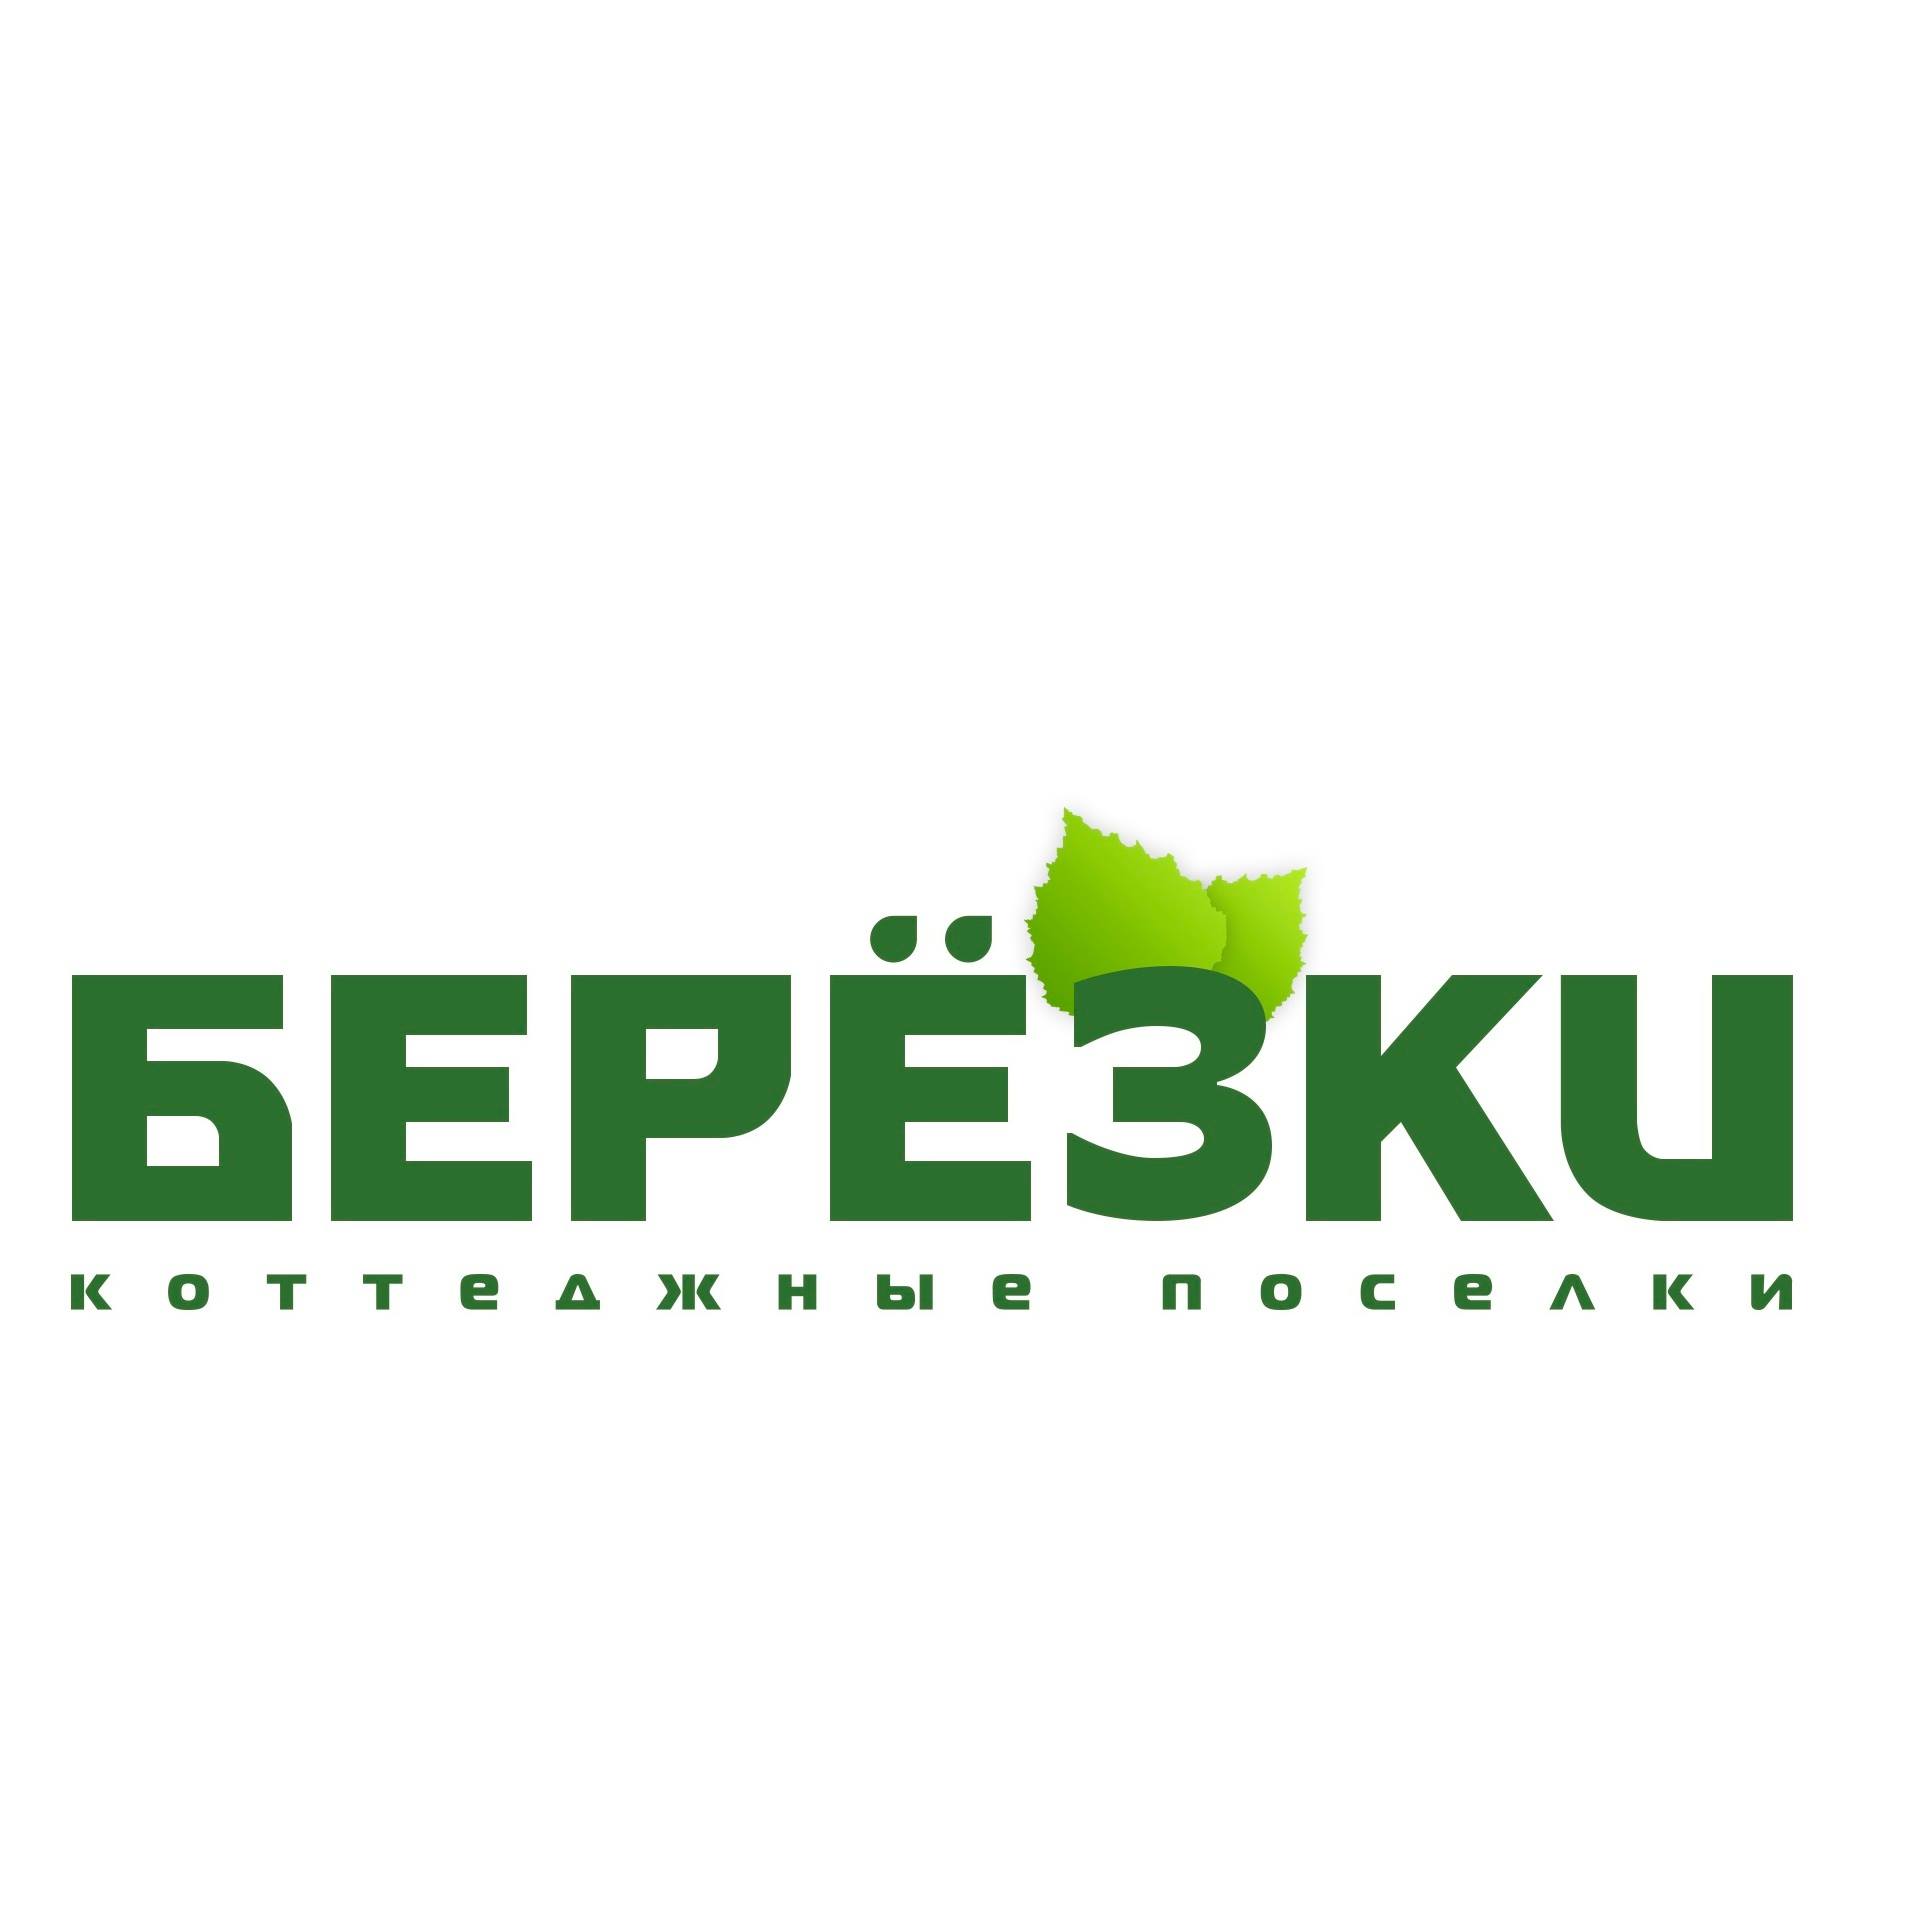 Компания березка. Лого Березки коттеджный поселок. Логотип коттеджного поселка. Березка лого. Берёзки ЖК Новосибирск логотип.